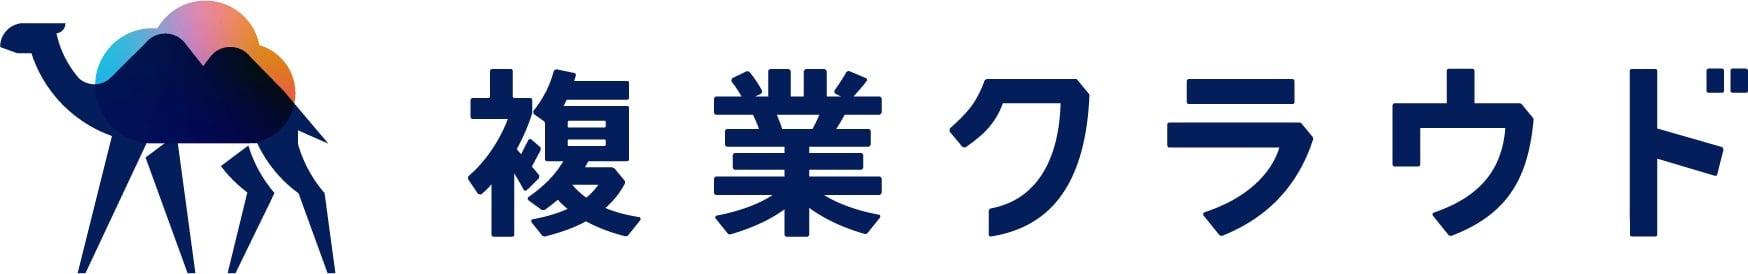 複業クラウド_logo